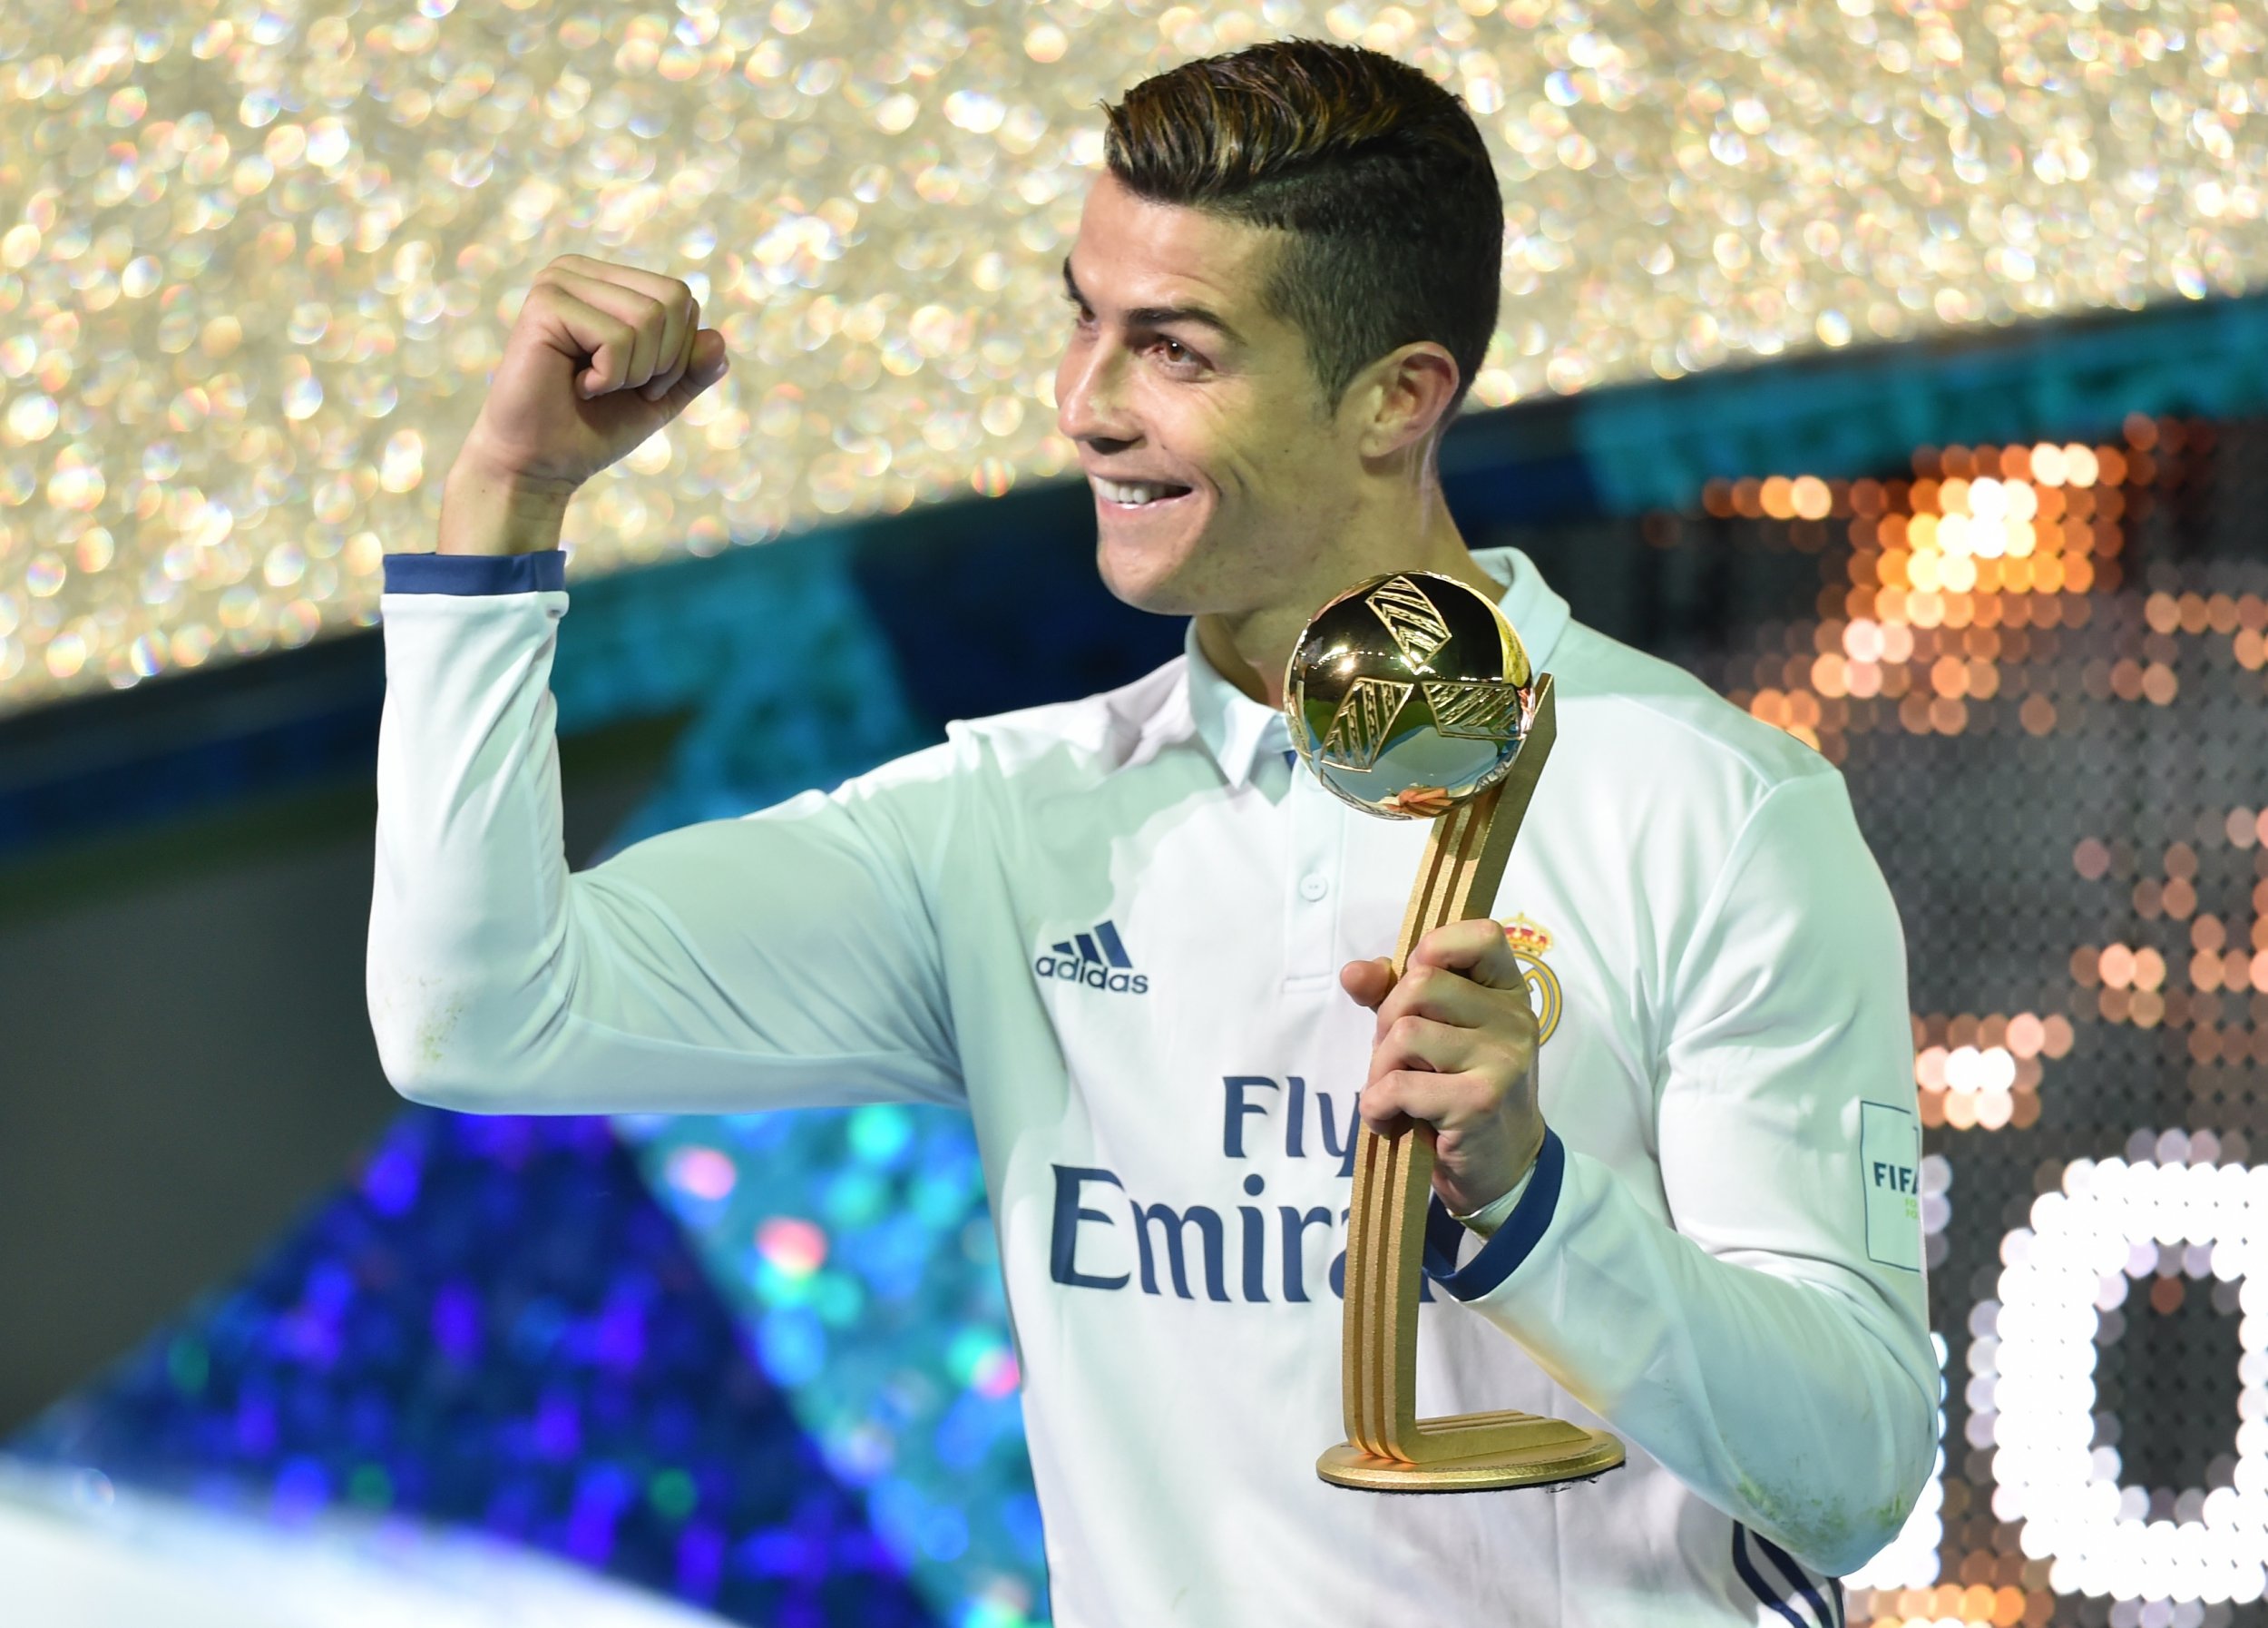 Real Madrid star Cristiano Ronaldo.